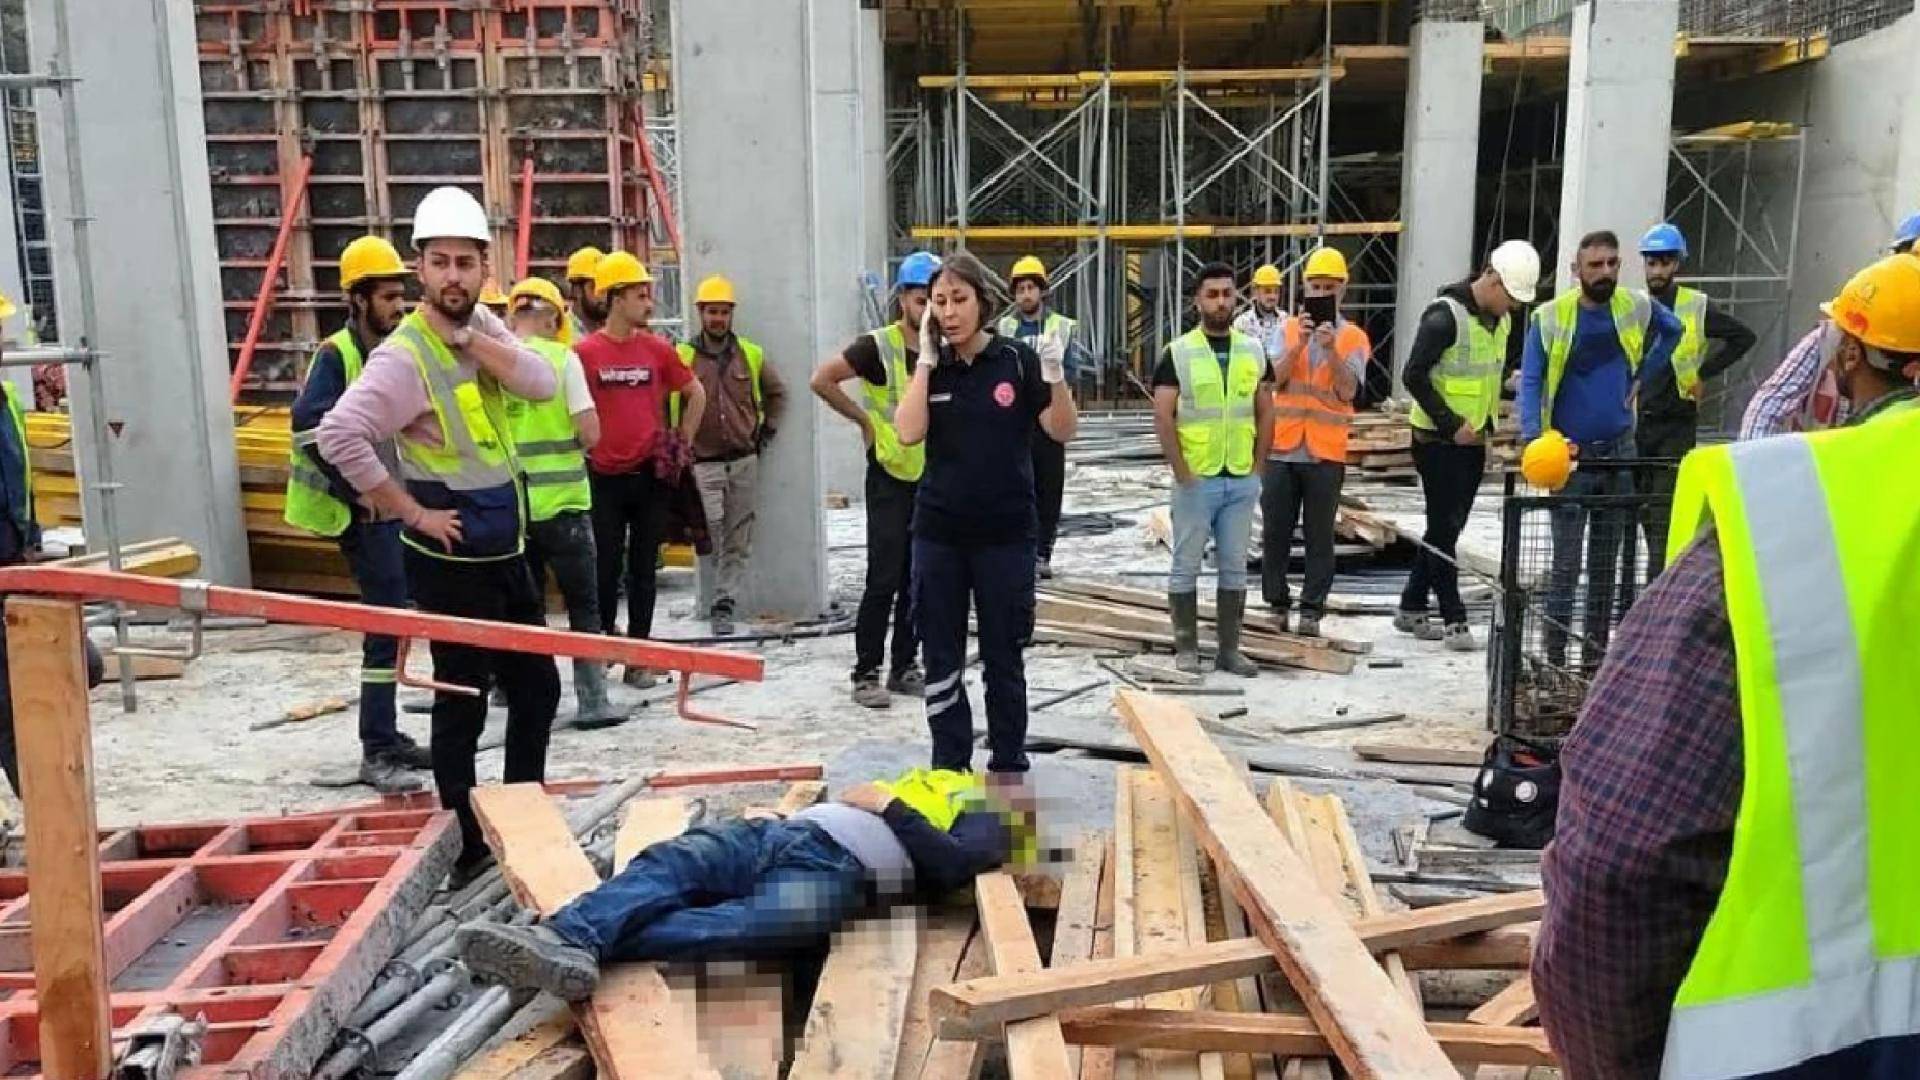 Marmaris’te inşaatta üzerine çelik kalıp düşen 34 yaşındaki işçi yaşamını kaybetti